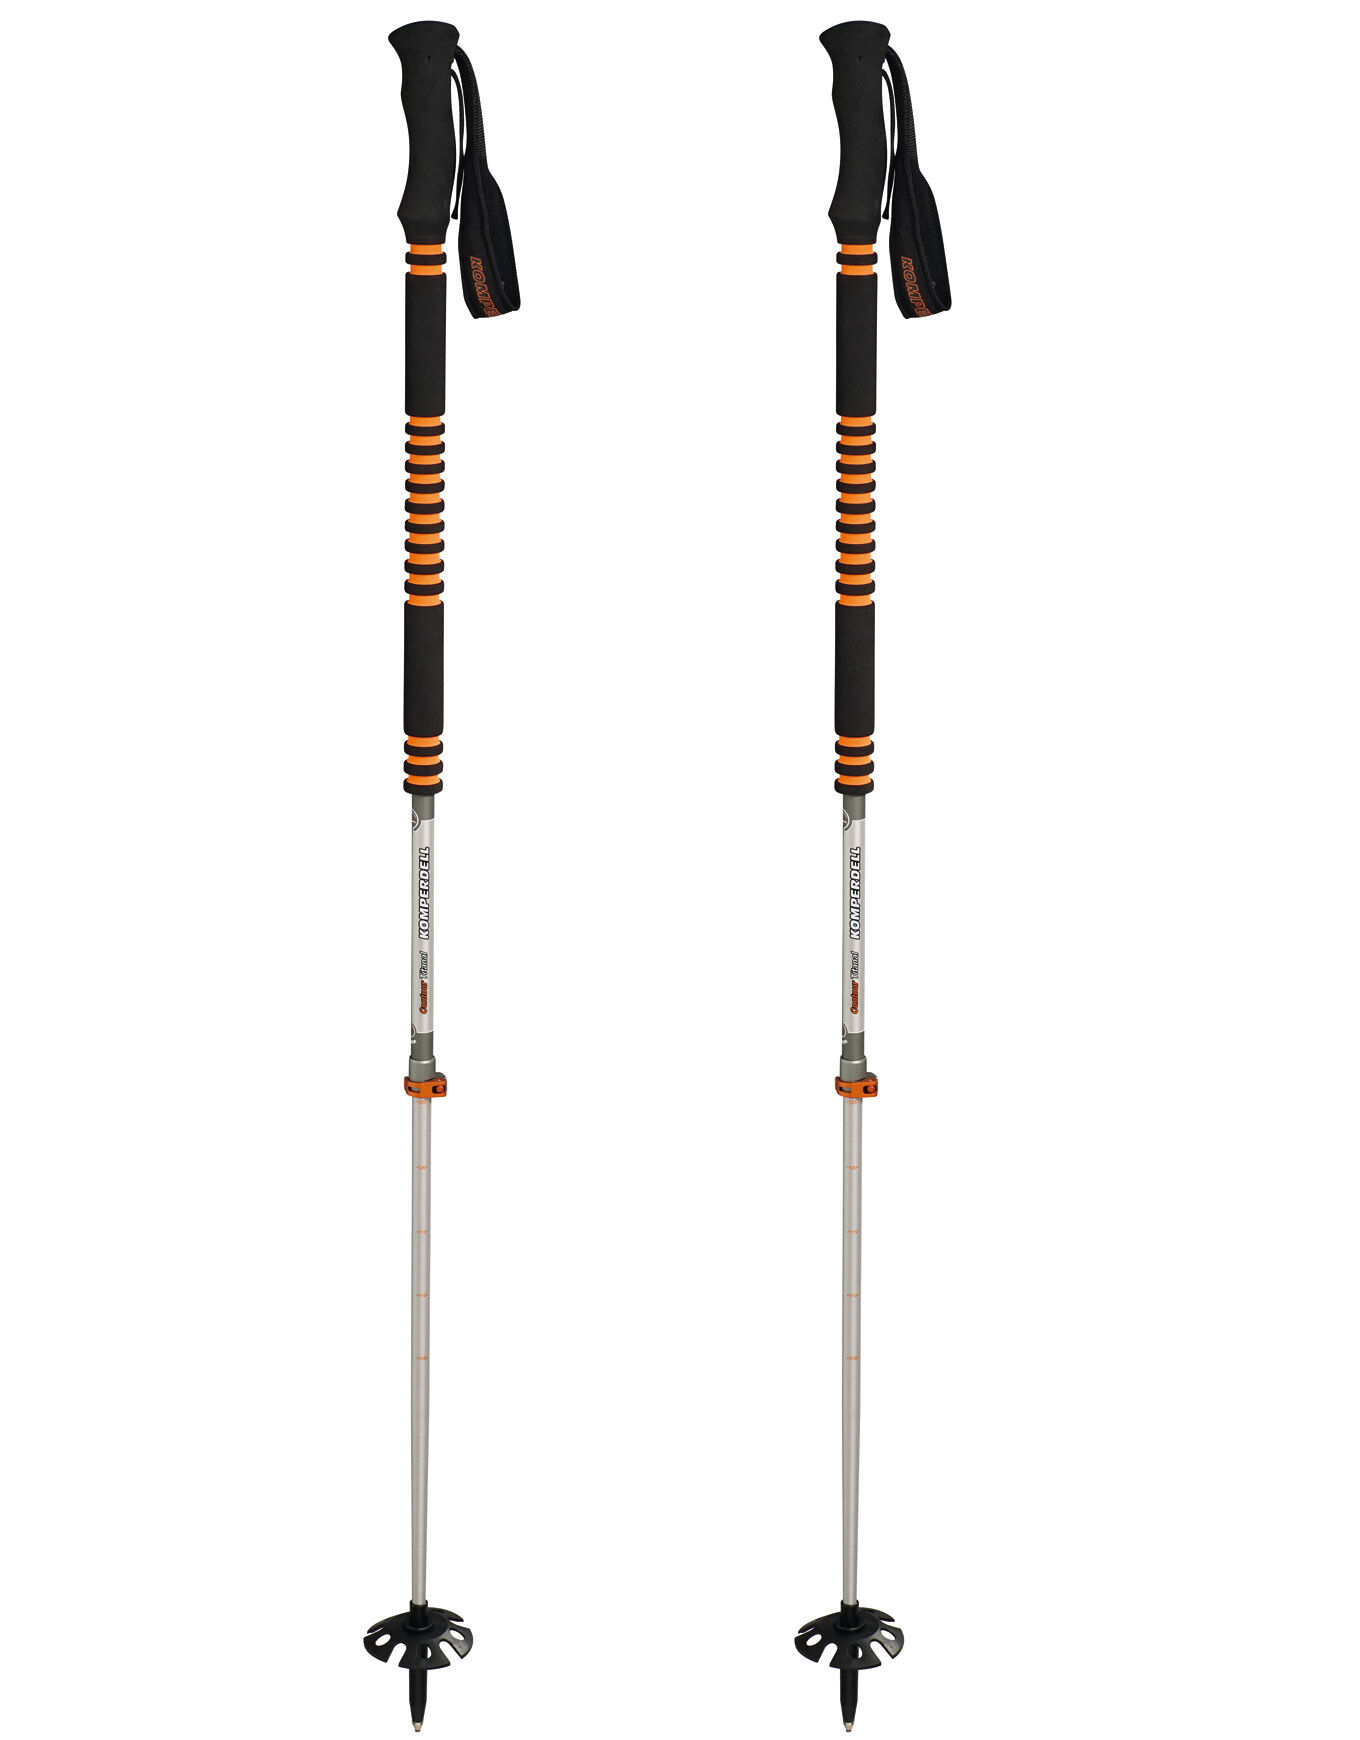 Komperdell Contour Titanal 2 - Ski poles